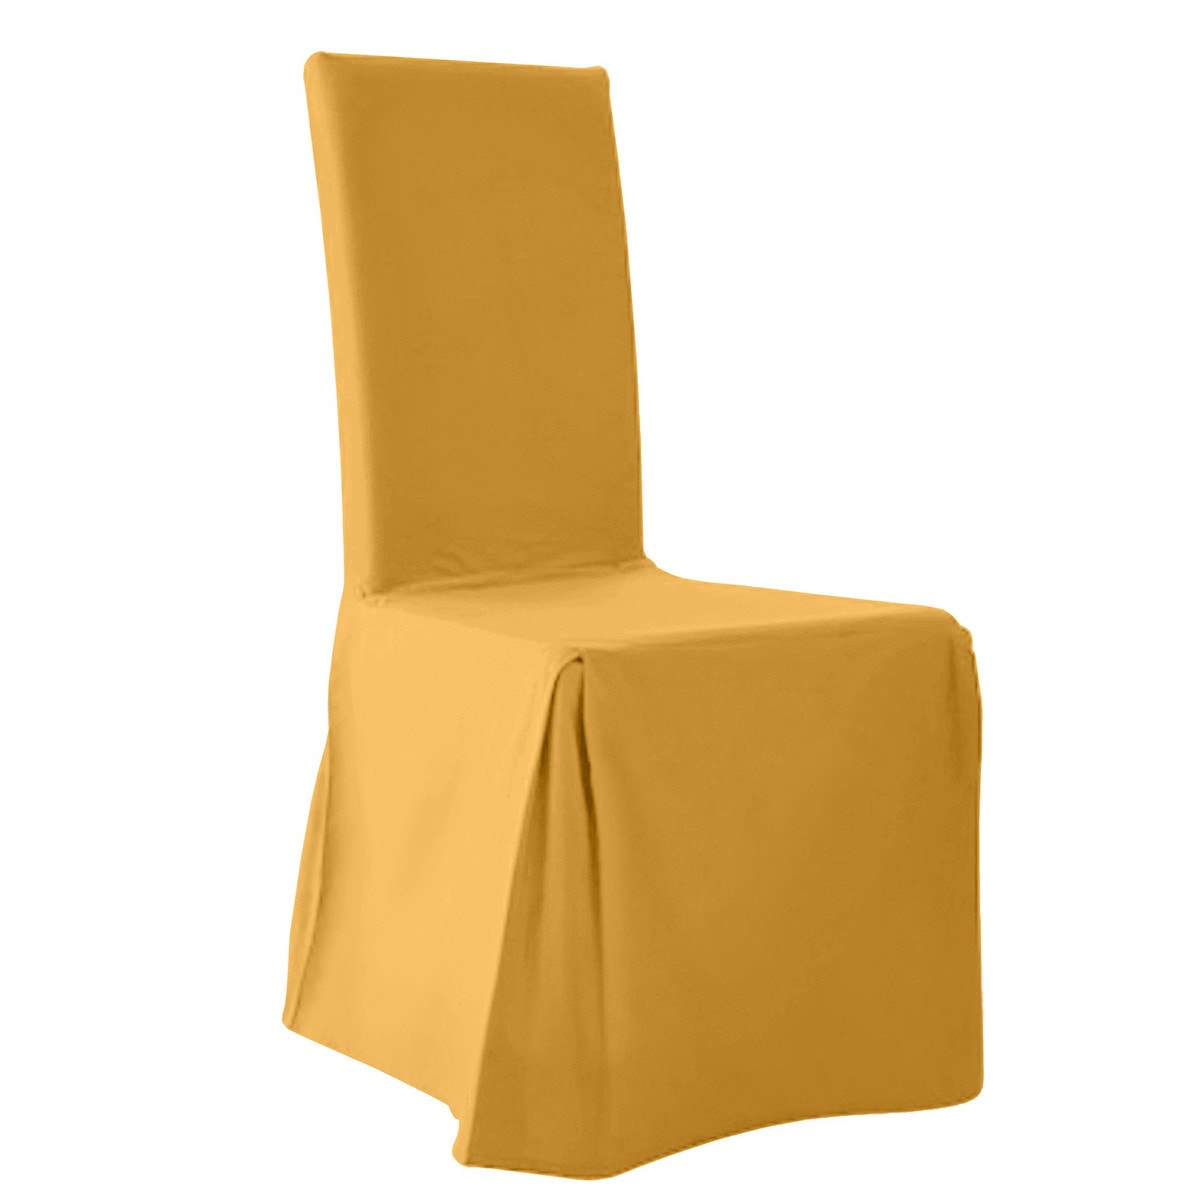 Σπίτι > Λευκά είδη > Ύφασμα, διακόσμηση > Καλύμματα καναπέ, καρέκλας > Καλύμματα καρέκλας Κάλυμμα καρέκλας (σετ των 2) One size Μ37xΠ40xΥ55cm